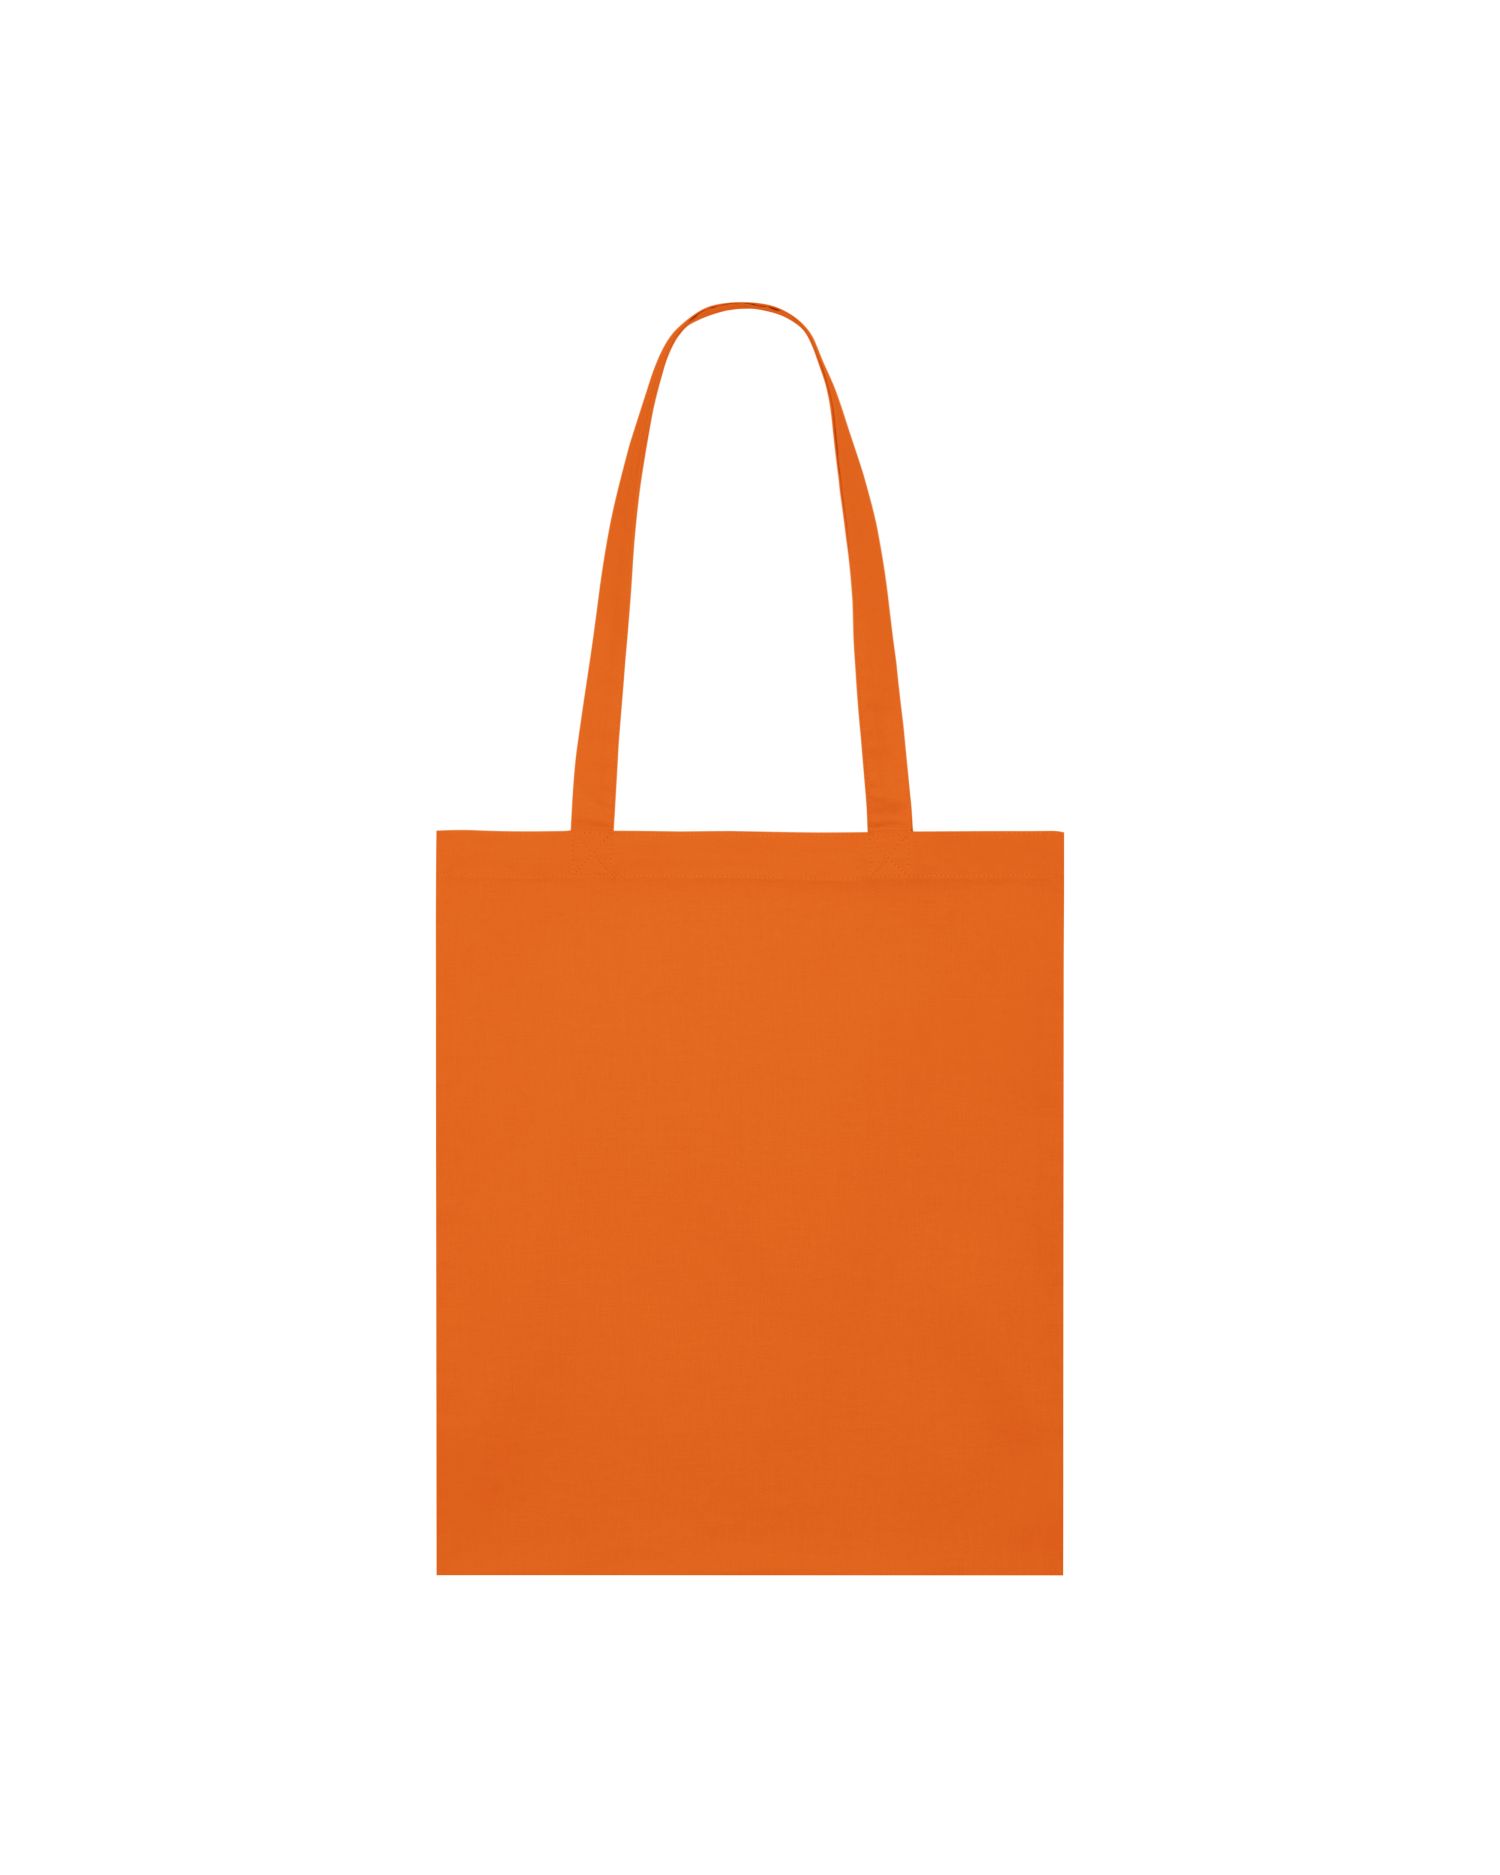  Light Tote Bag in Farbe Bright Orange